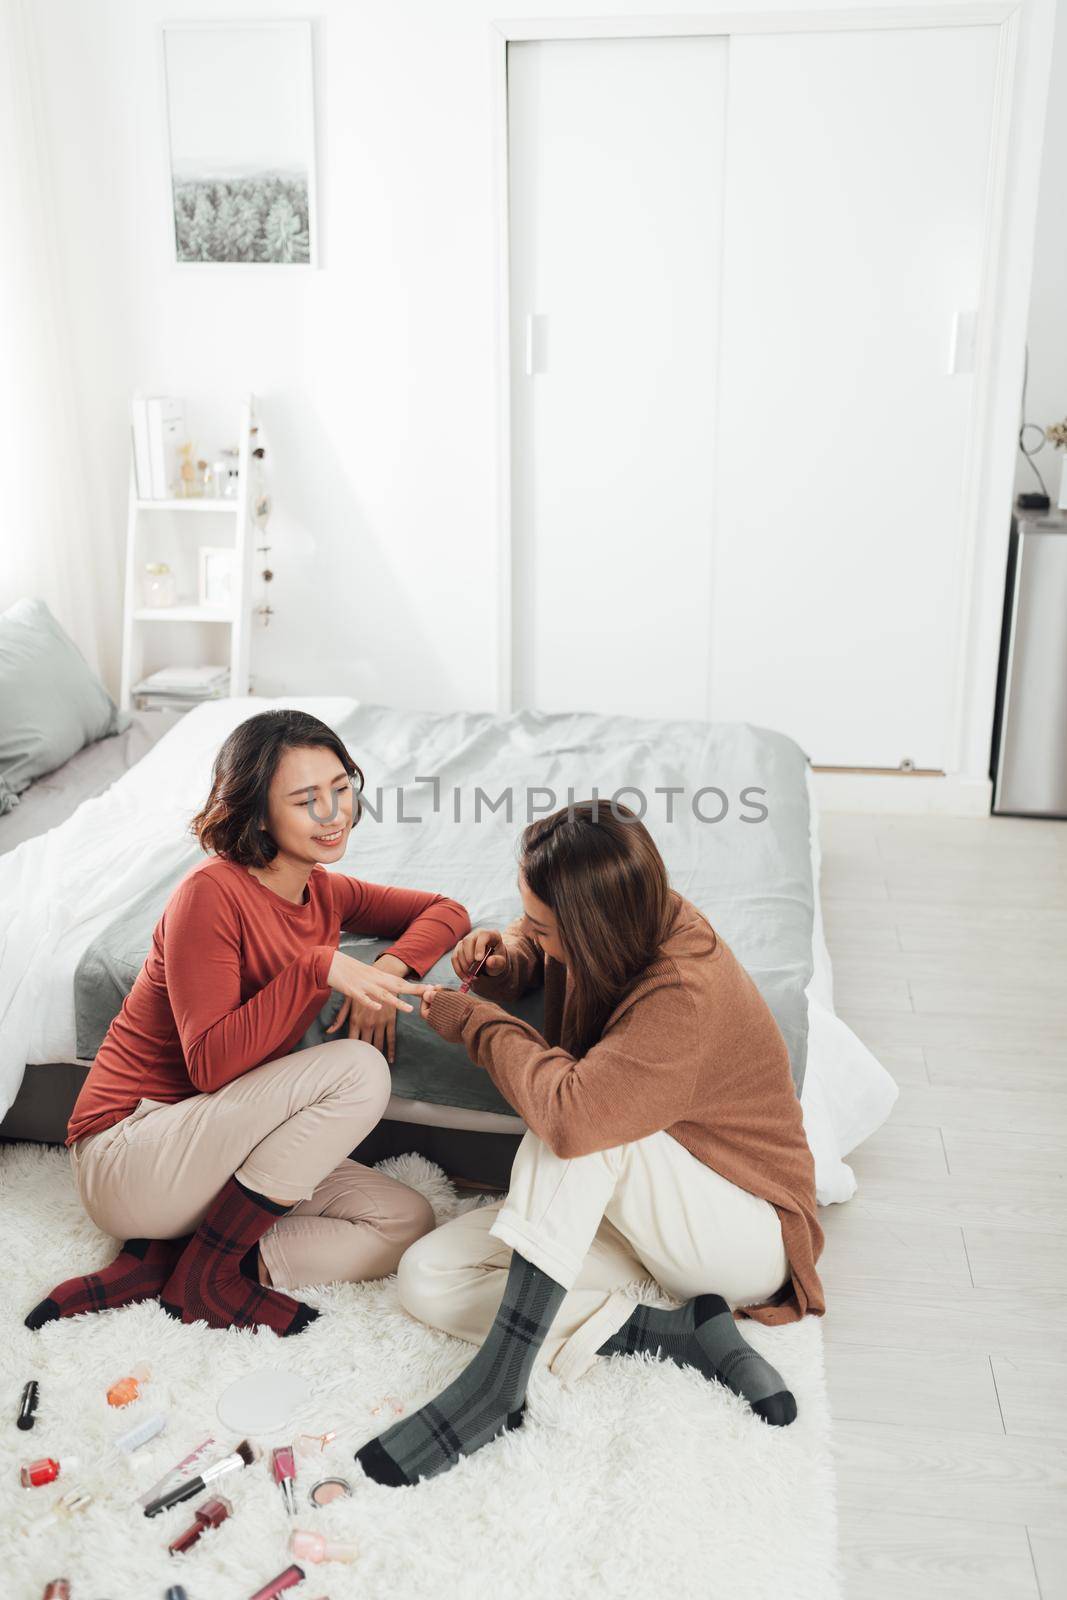 Women applying nail polish at home by makidotvn